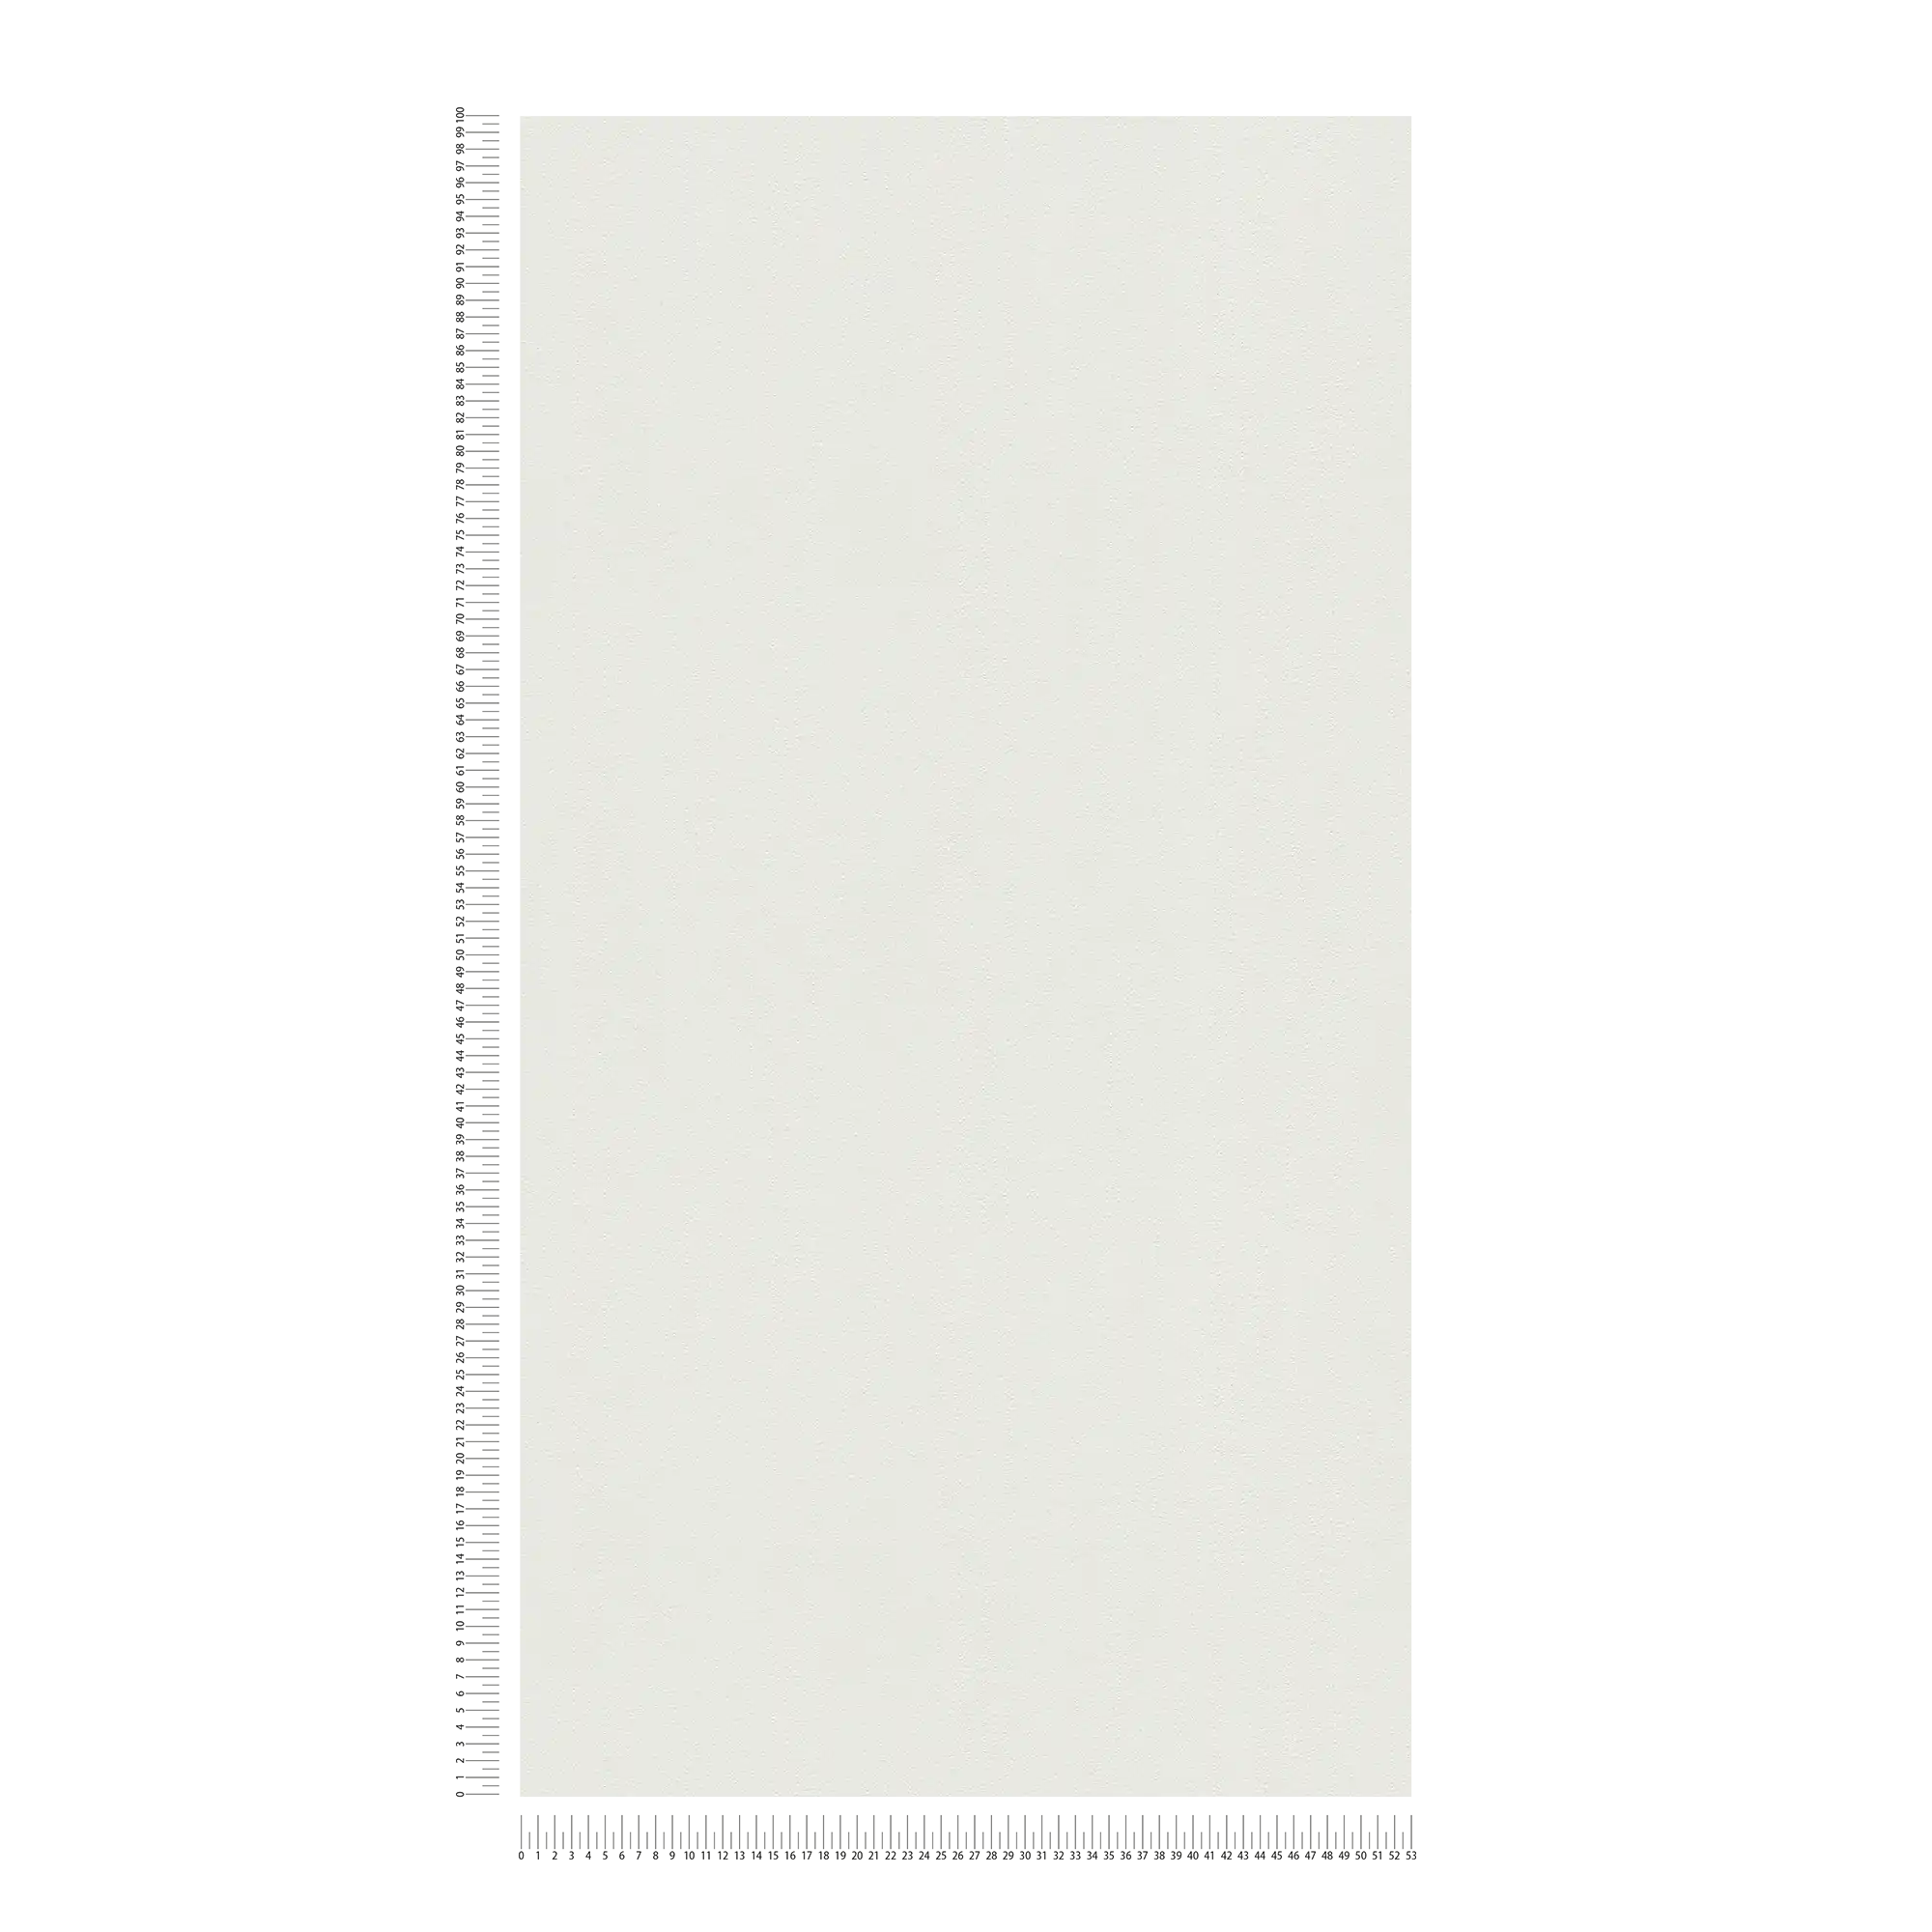             Carta da parati verniciabile in tessuto non tessuto con superficie strutturata - bianco
        